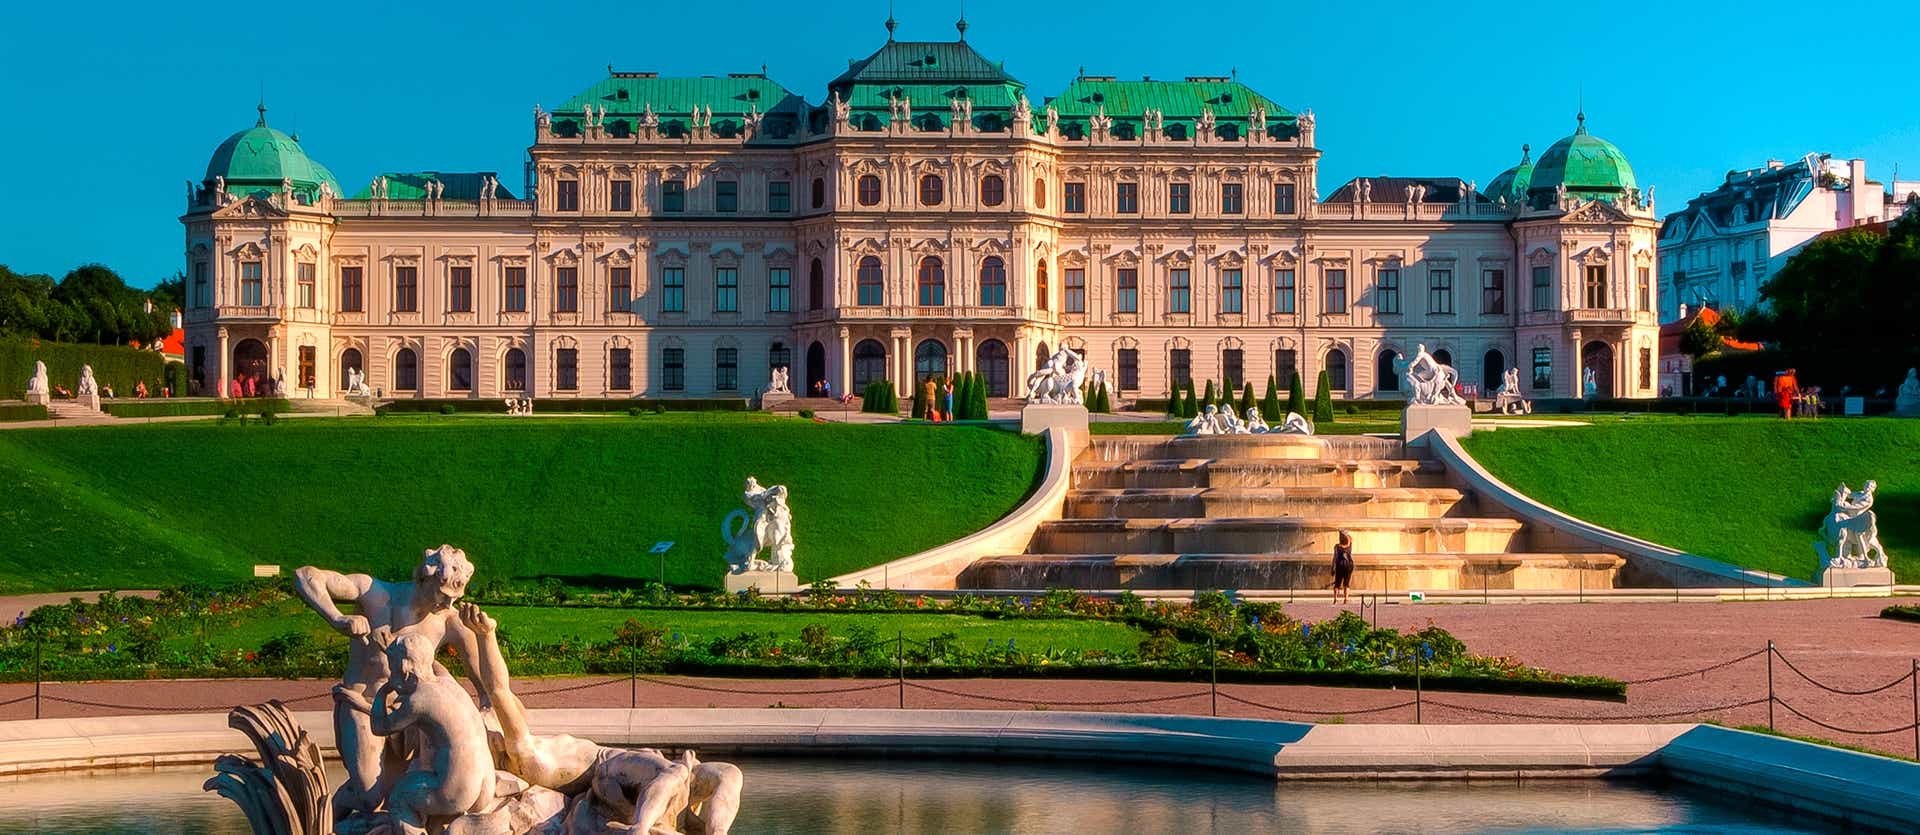 Palacio Belvedere <span class="iconos separador"></span> Viena  <span class="iconos separador"></span> Austria